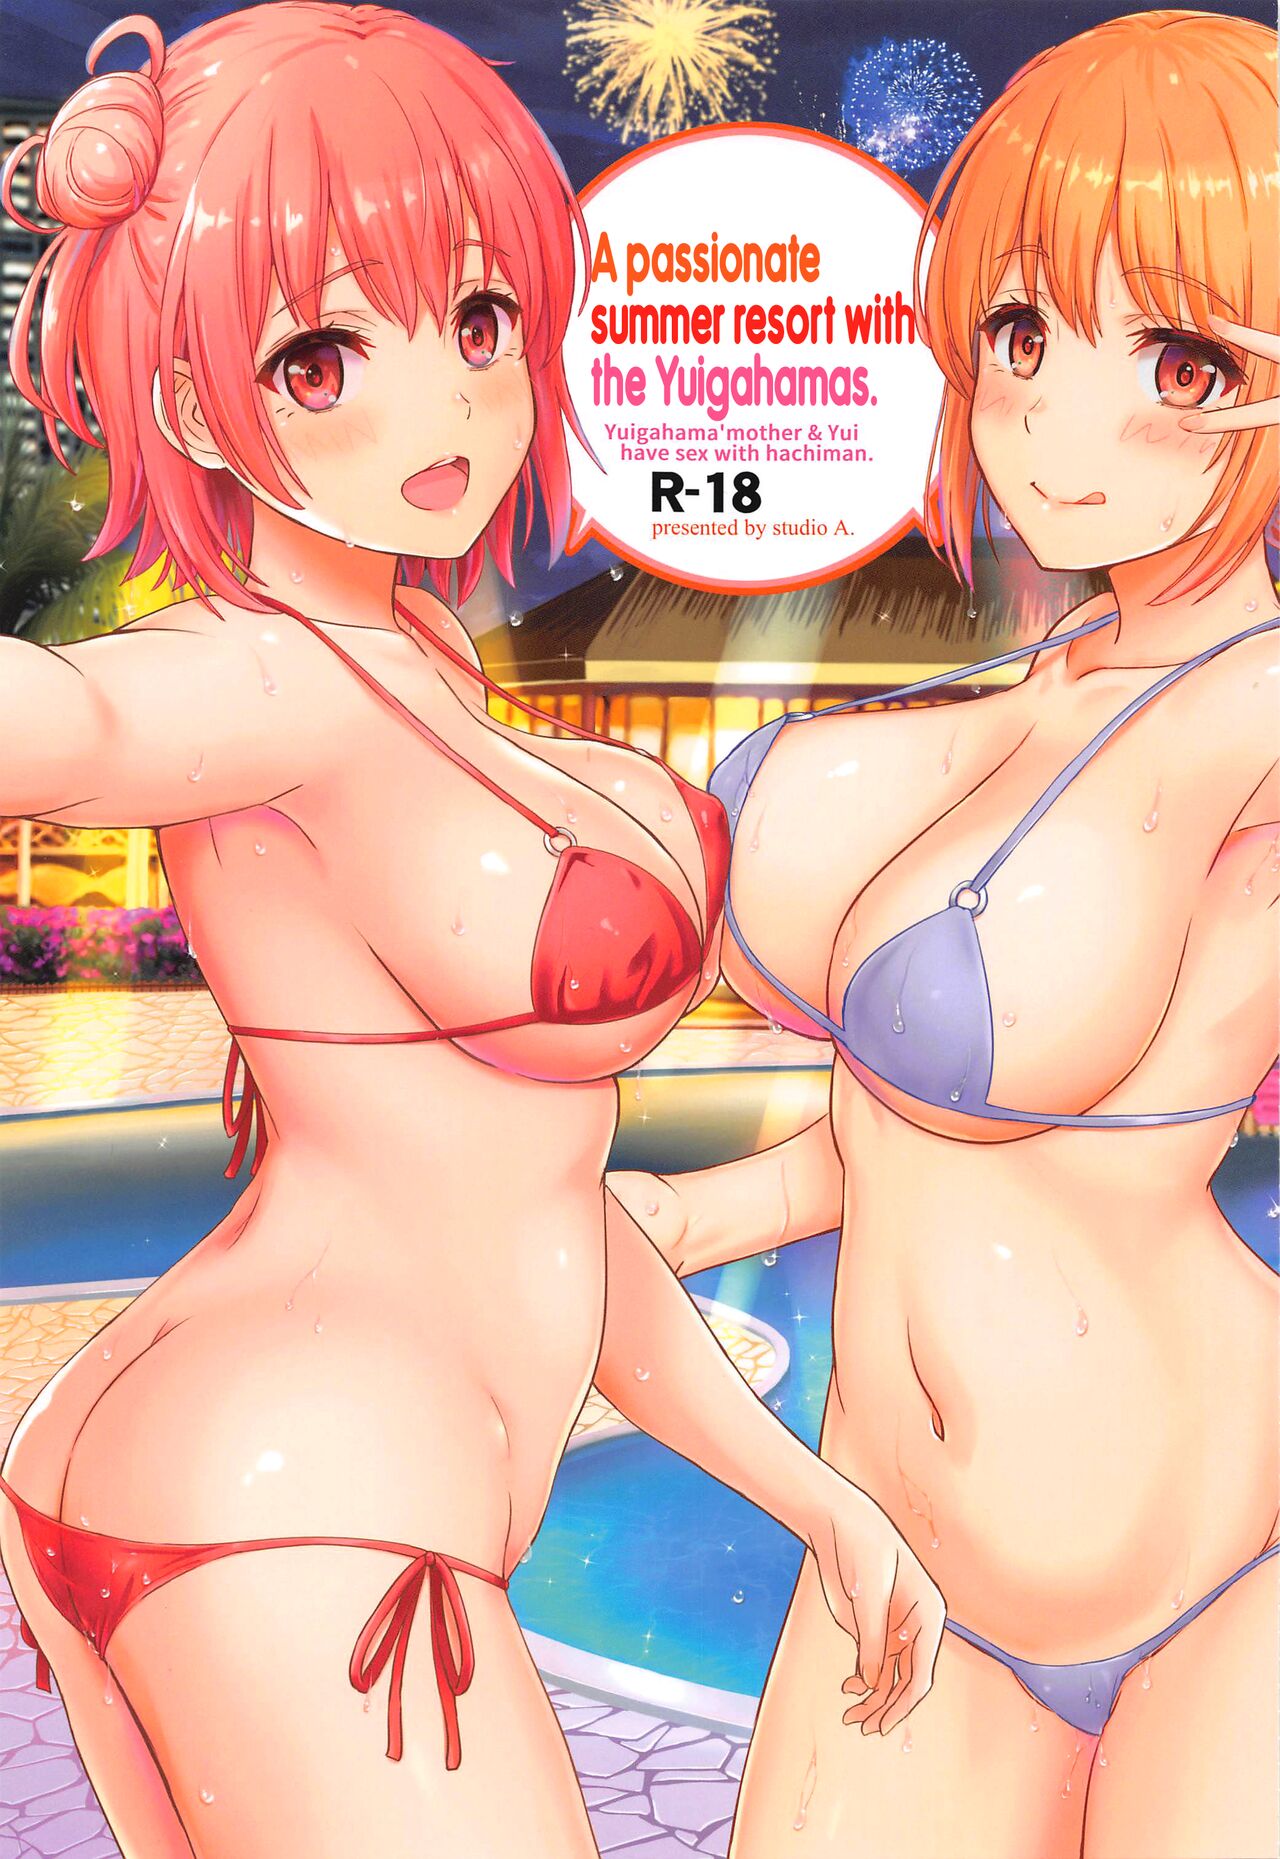 Yahari Ore no Seishun Love Come wa Machigatteiru Porn Comics Sex Image Hq